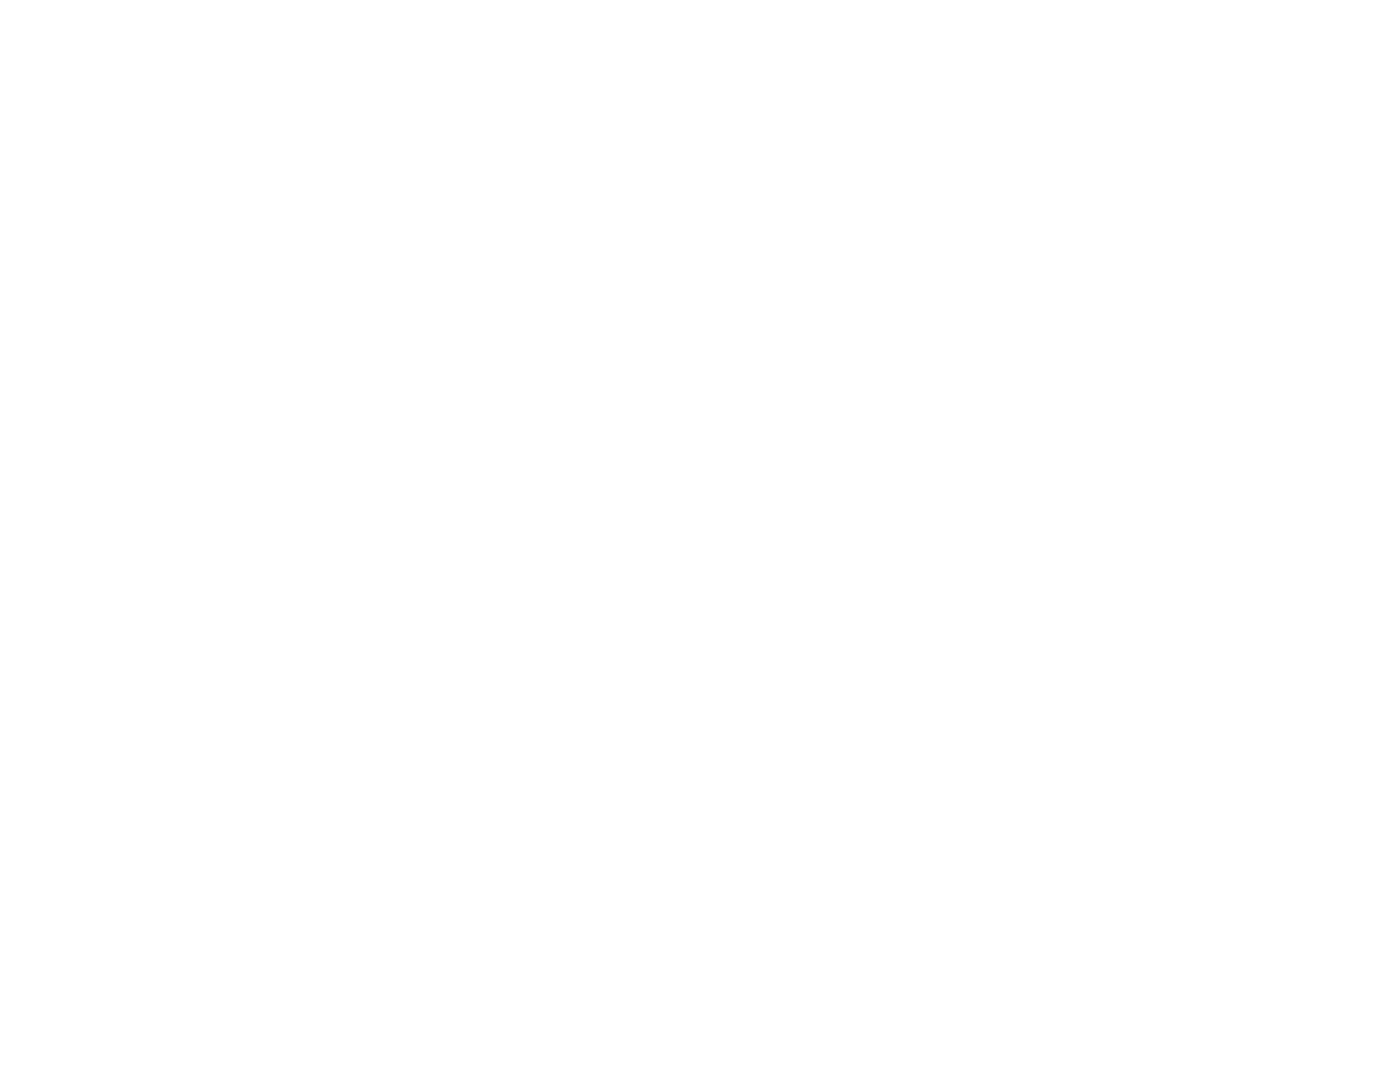 The Augury